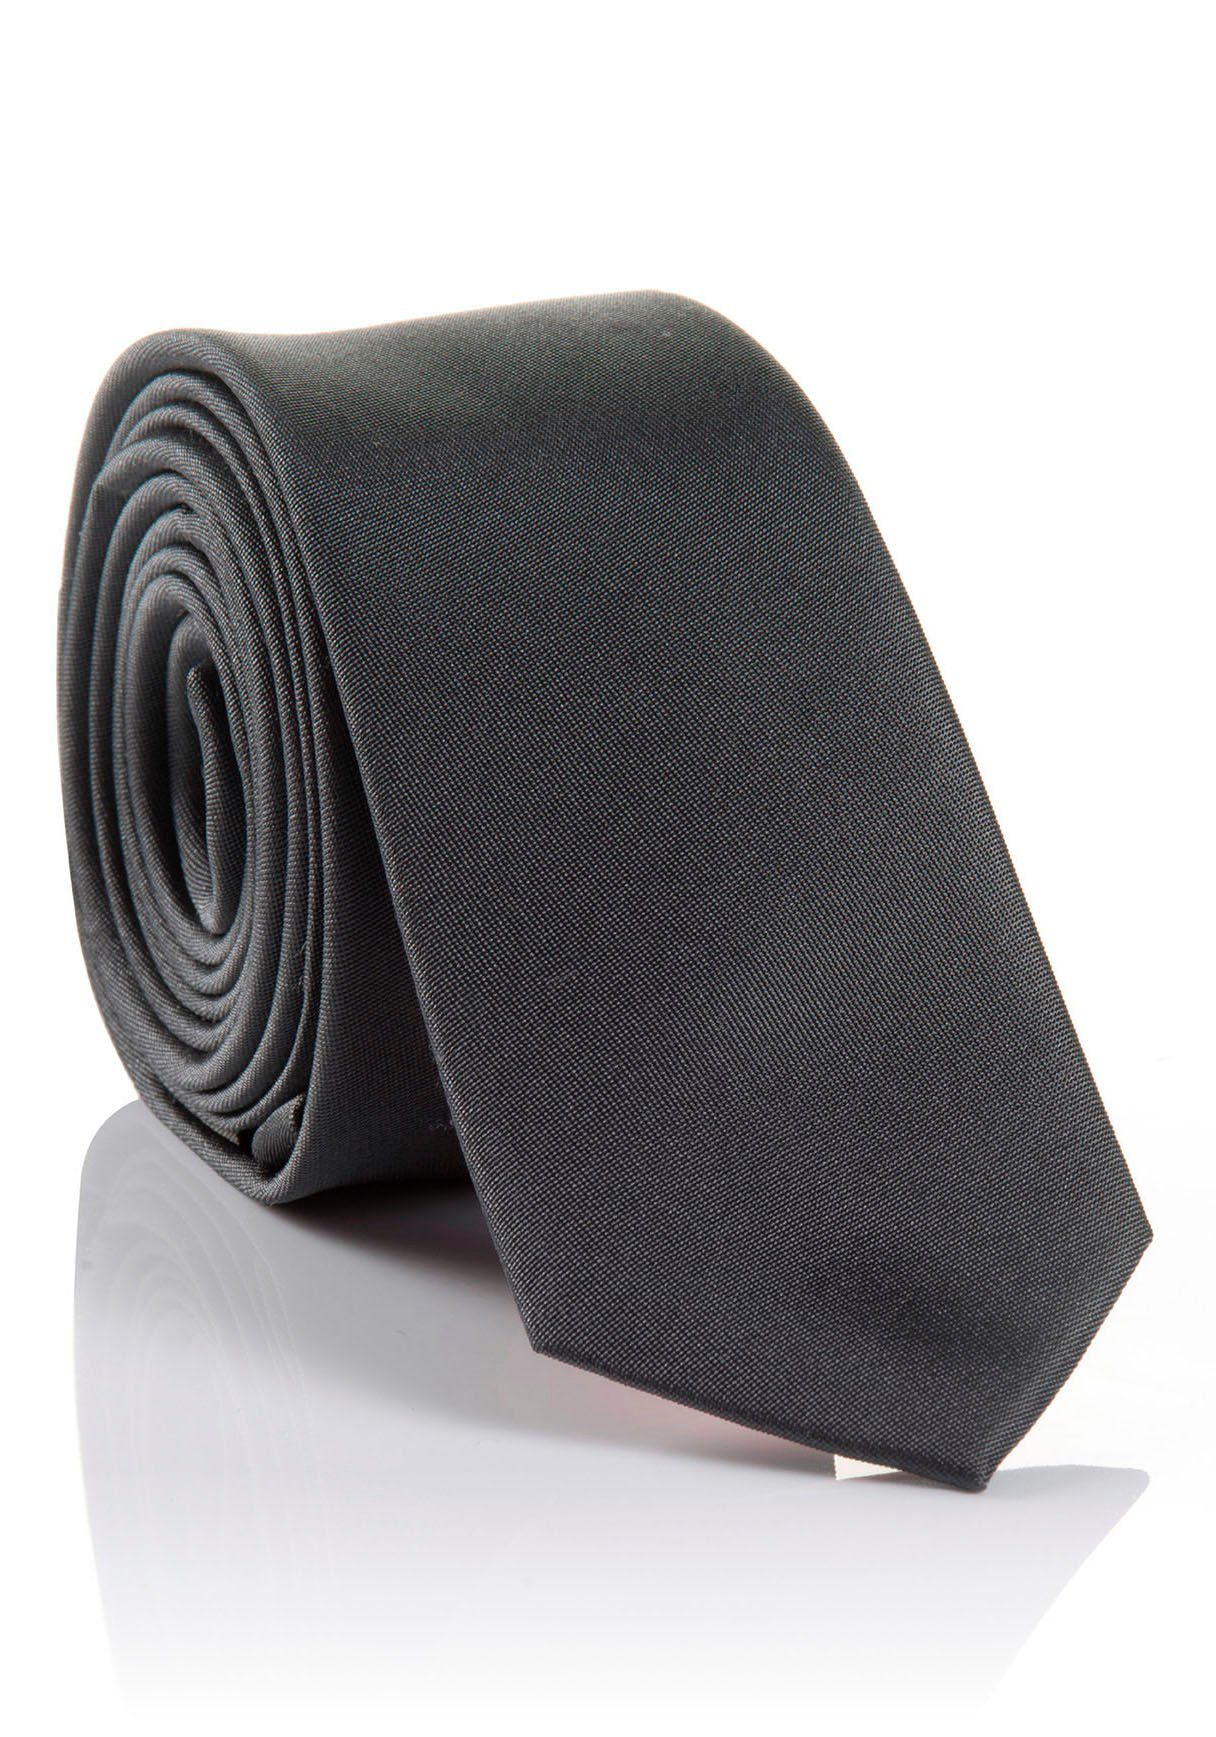 Tragekomfort verarbeitete LORENZO Krawatte MONTI grey mit Seidenkrawatte Hochwertig hohem